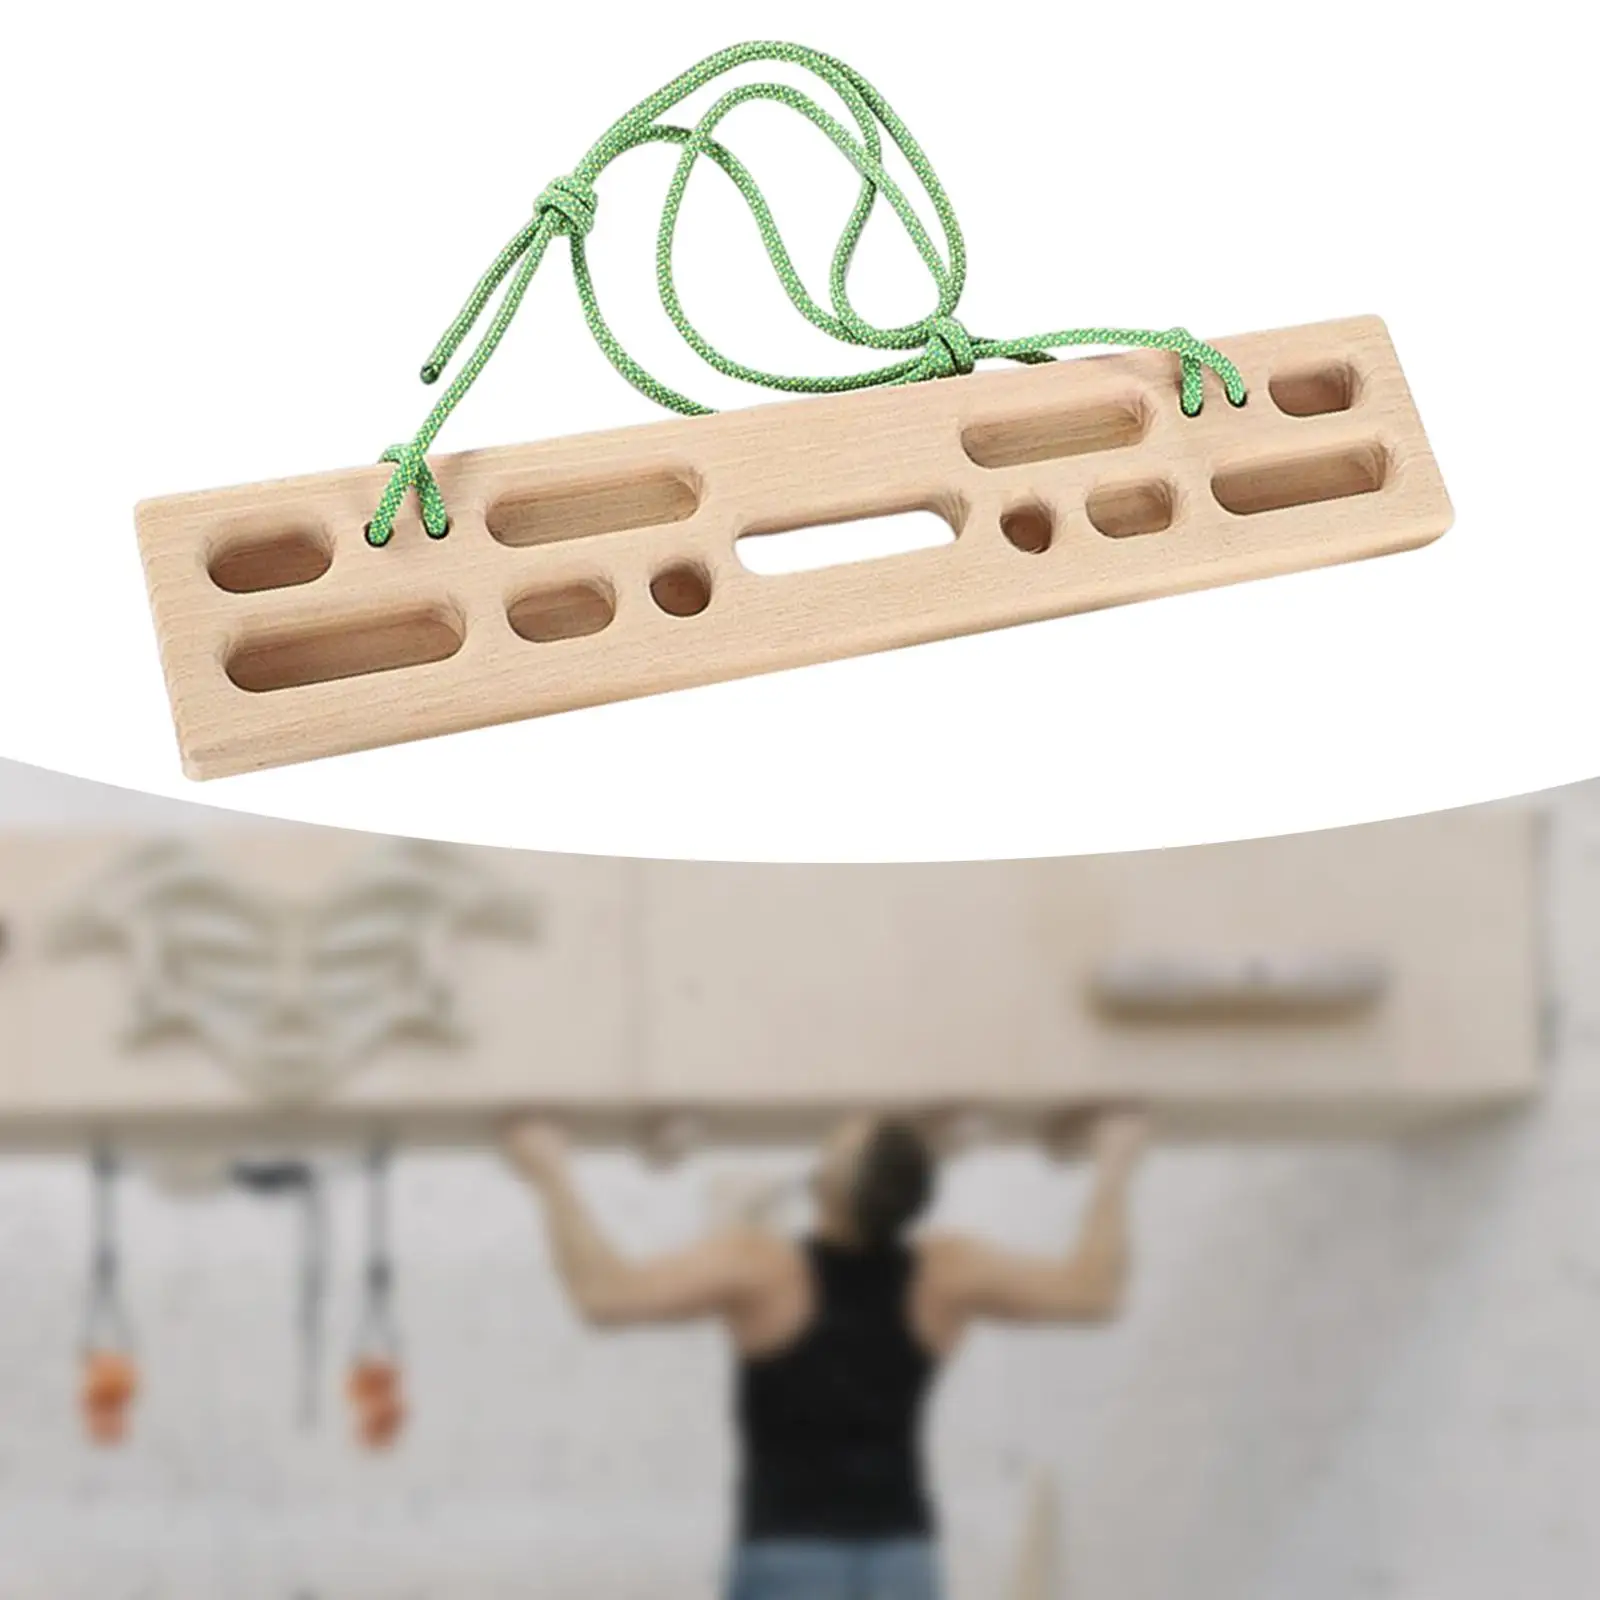 Climbing Hangboard Fingerboard Wooden Hang Board for Indoor Outdoor Home